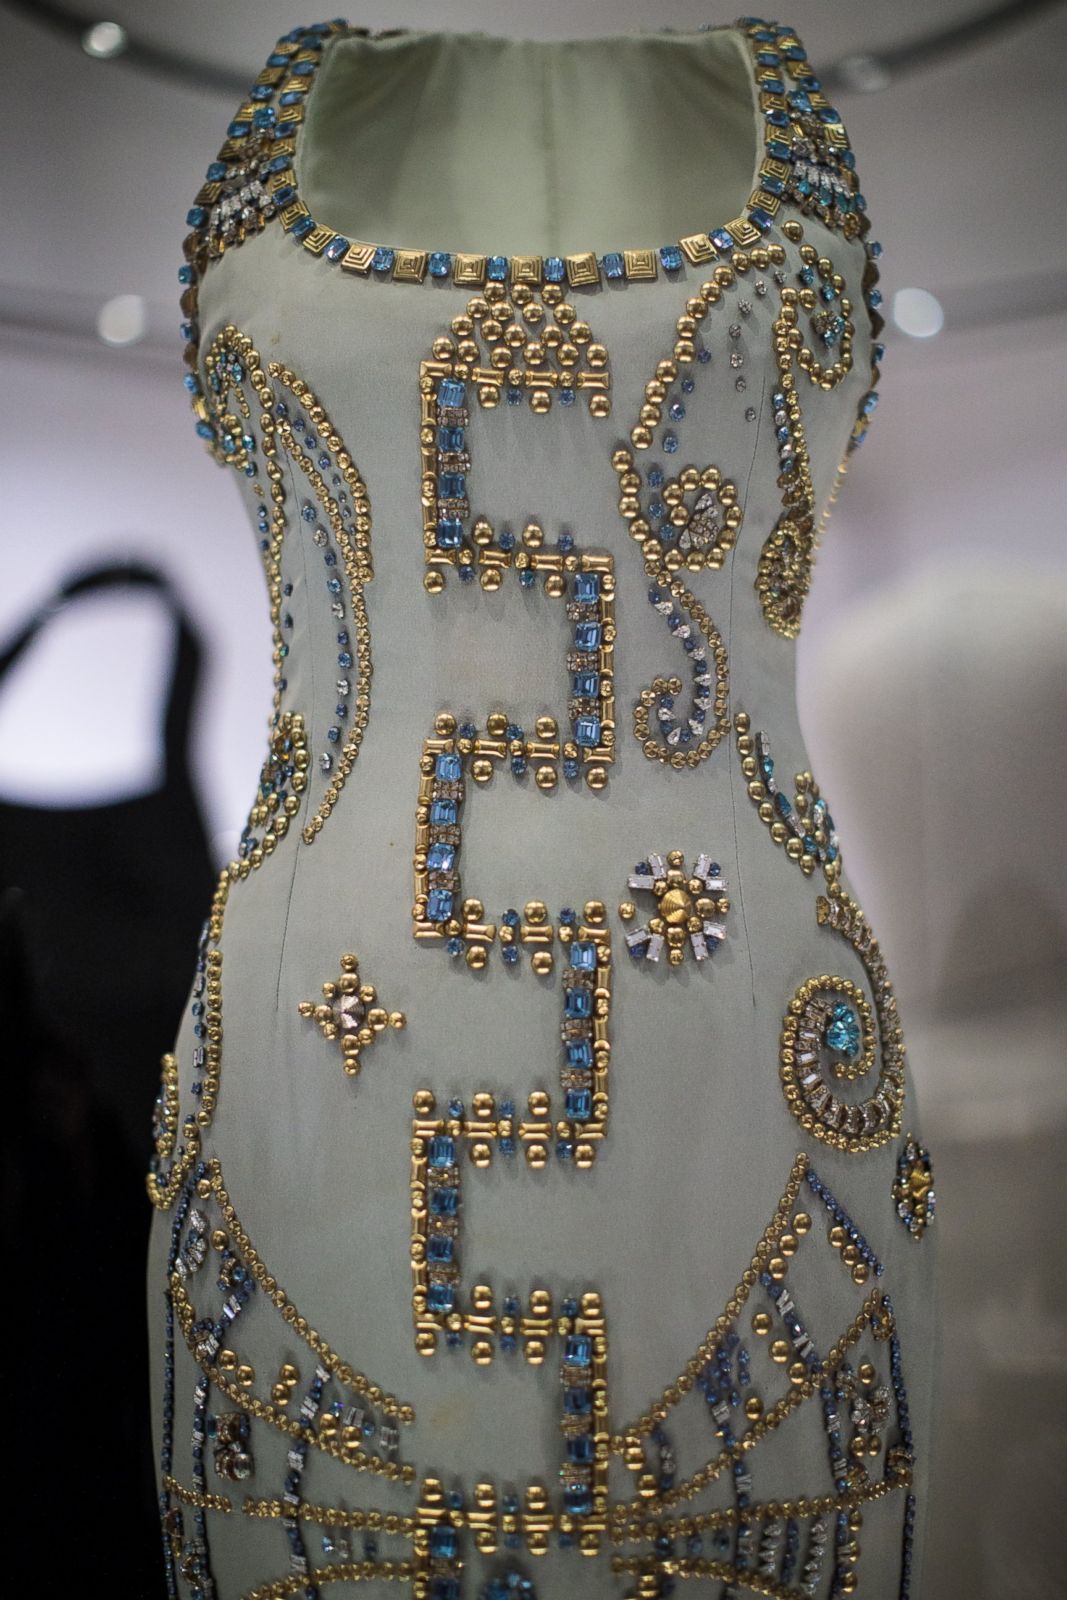 Princess Diana Versace Gown